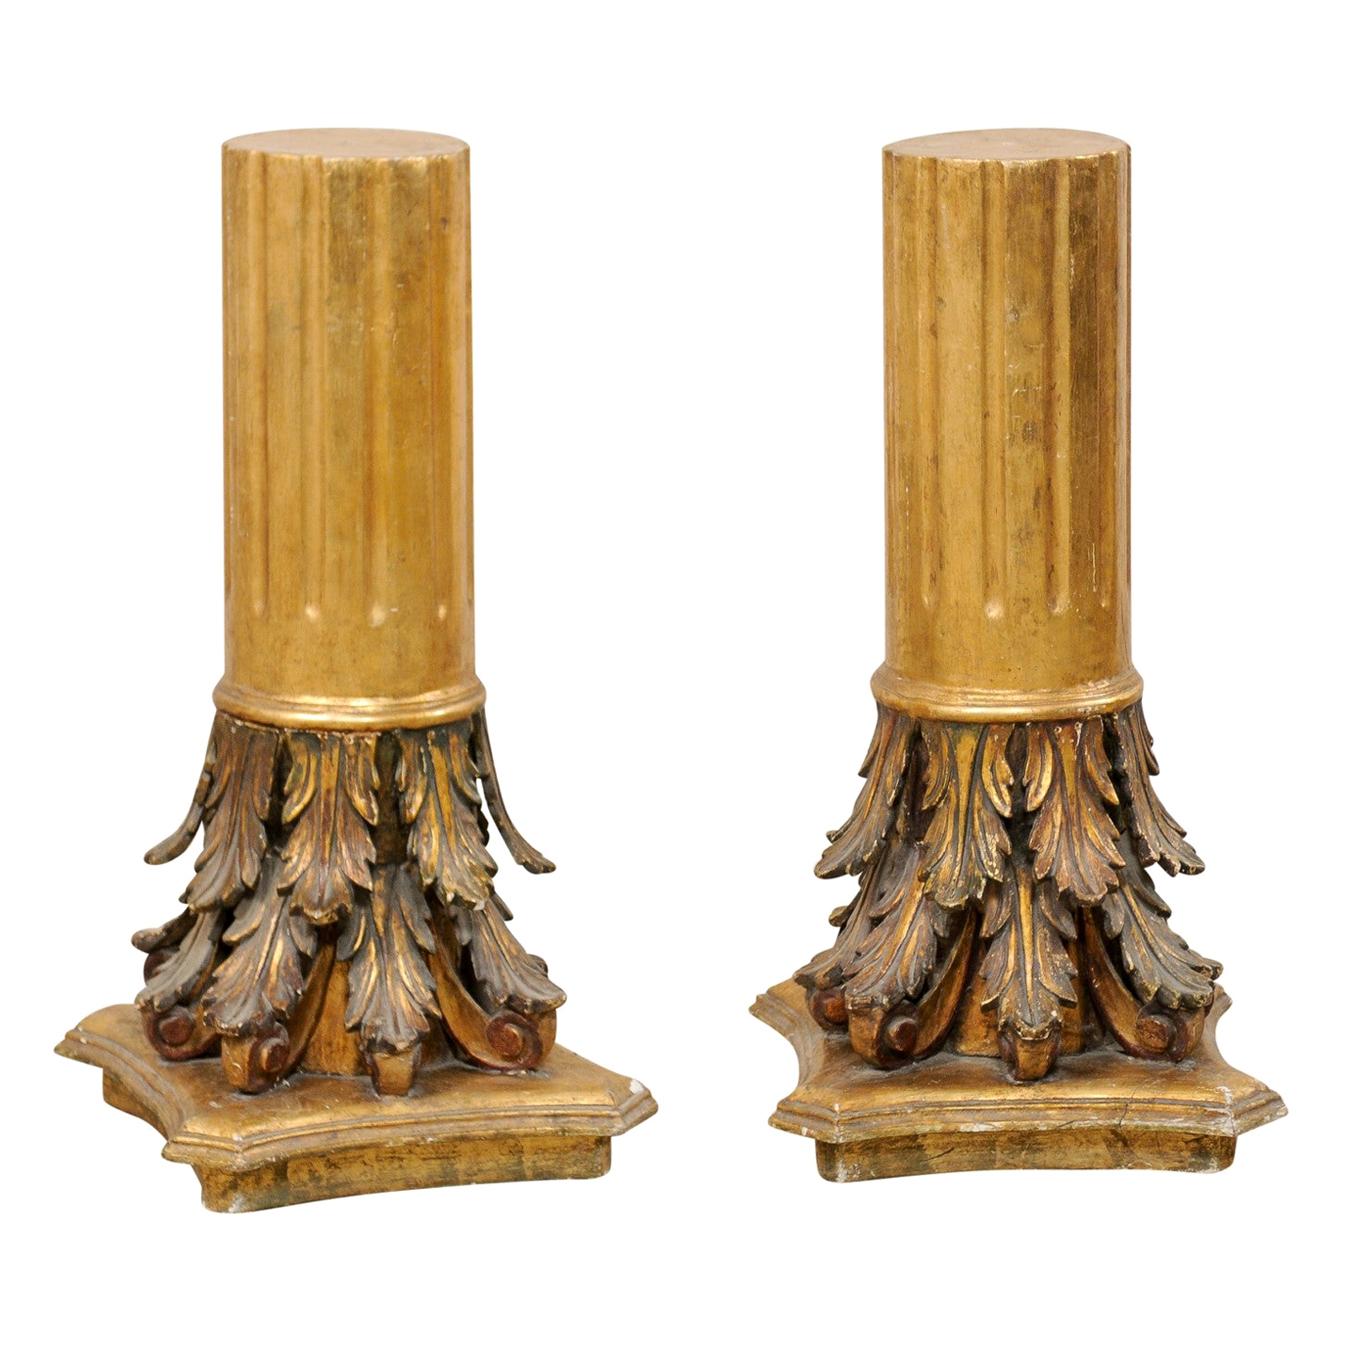 Paire de piédestaux italiens anciens de style coréen romain sculptés et en bois doré